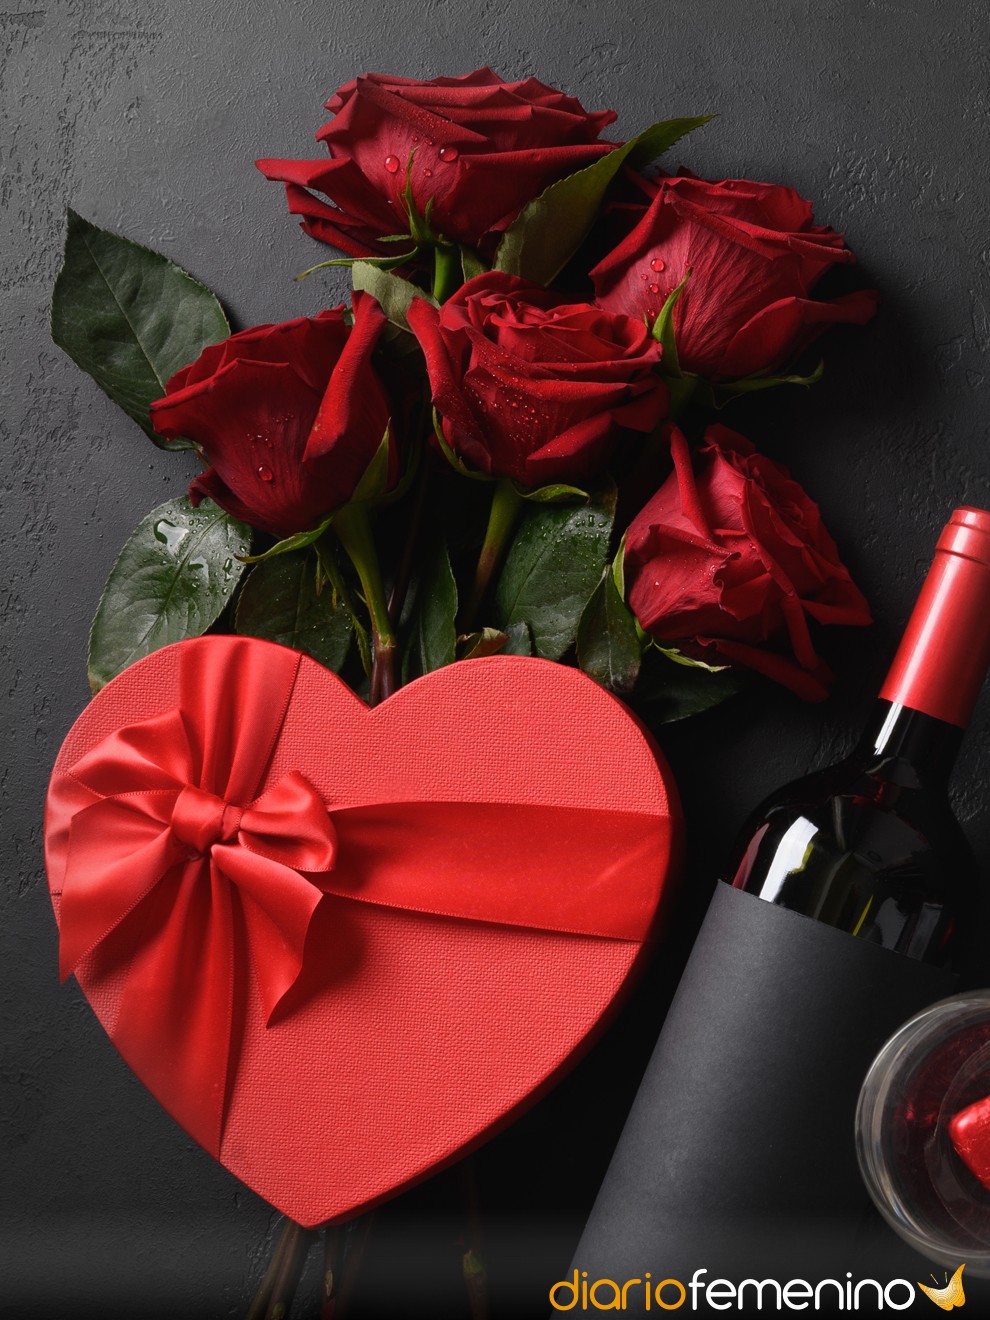 5 regalos originales para San Valentín